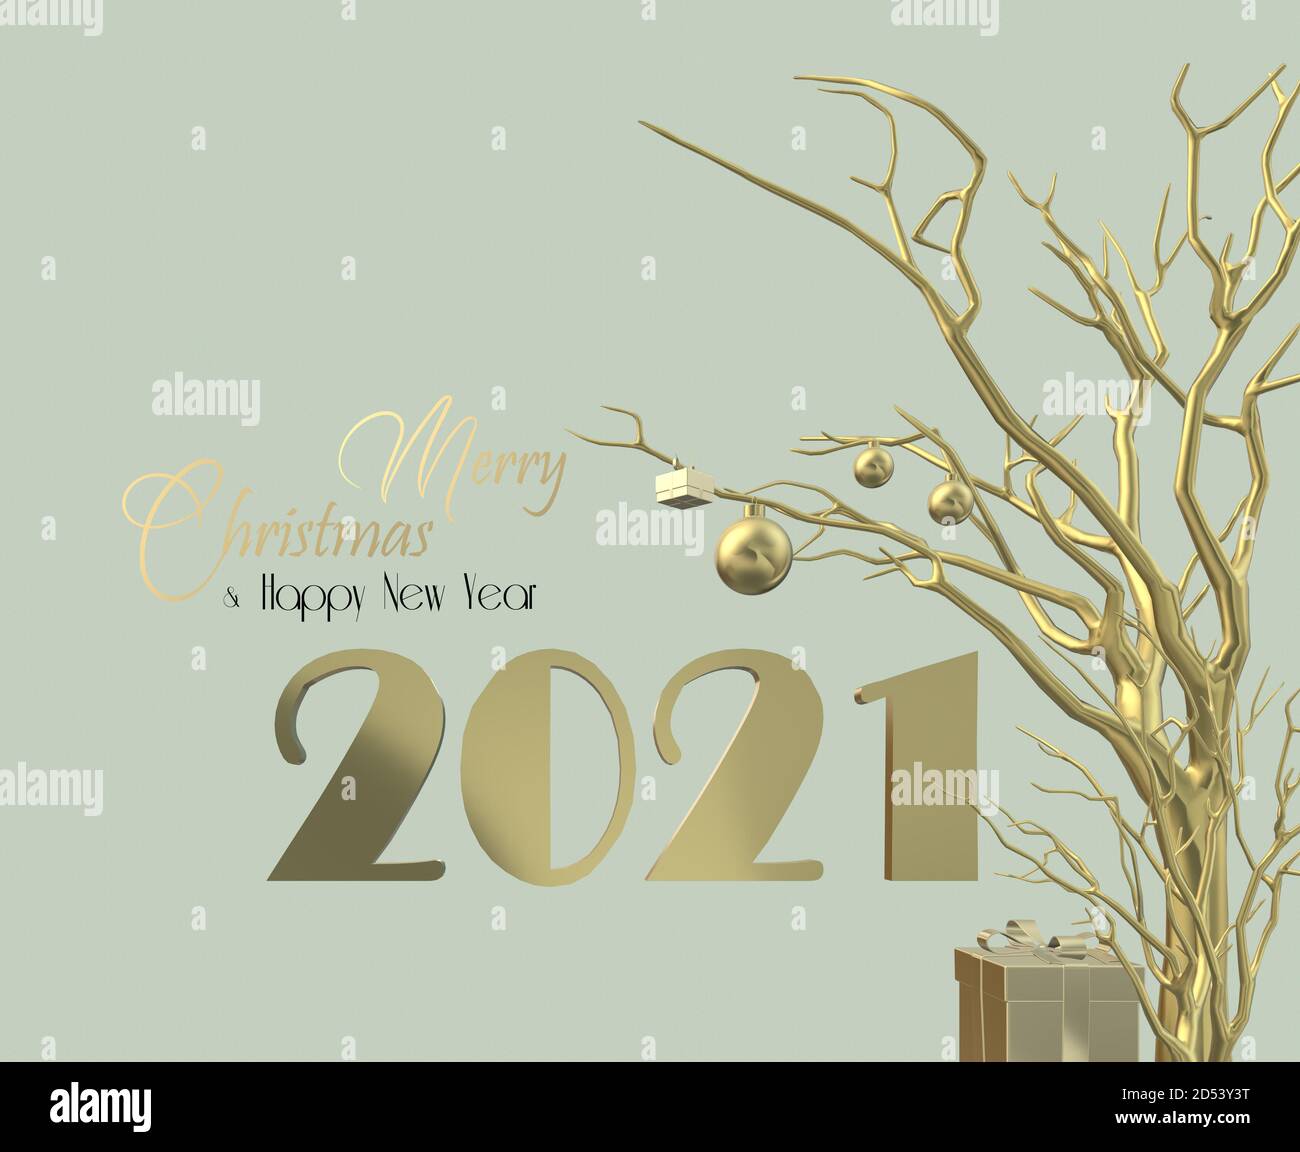 Bonne année 2021 design. Arrangement d'or de chiffre 2021, décoration de Noël accrochée à l'arbre d'or sur fond de pistache geen pastel. Texte Joyeux Noël bonne année, illustration 3D Banque D'Images